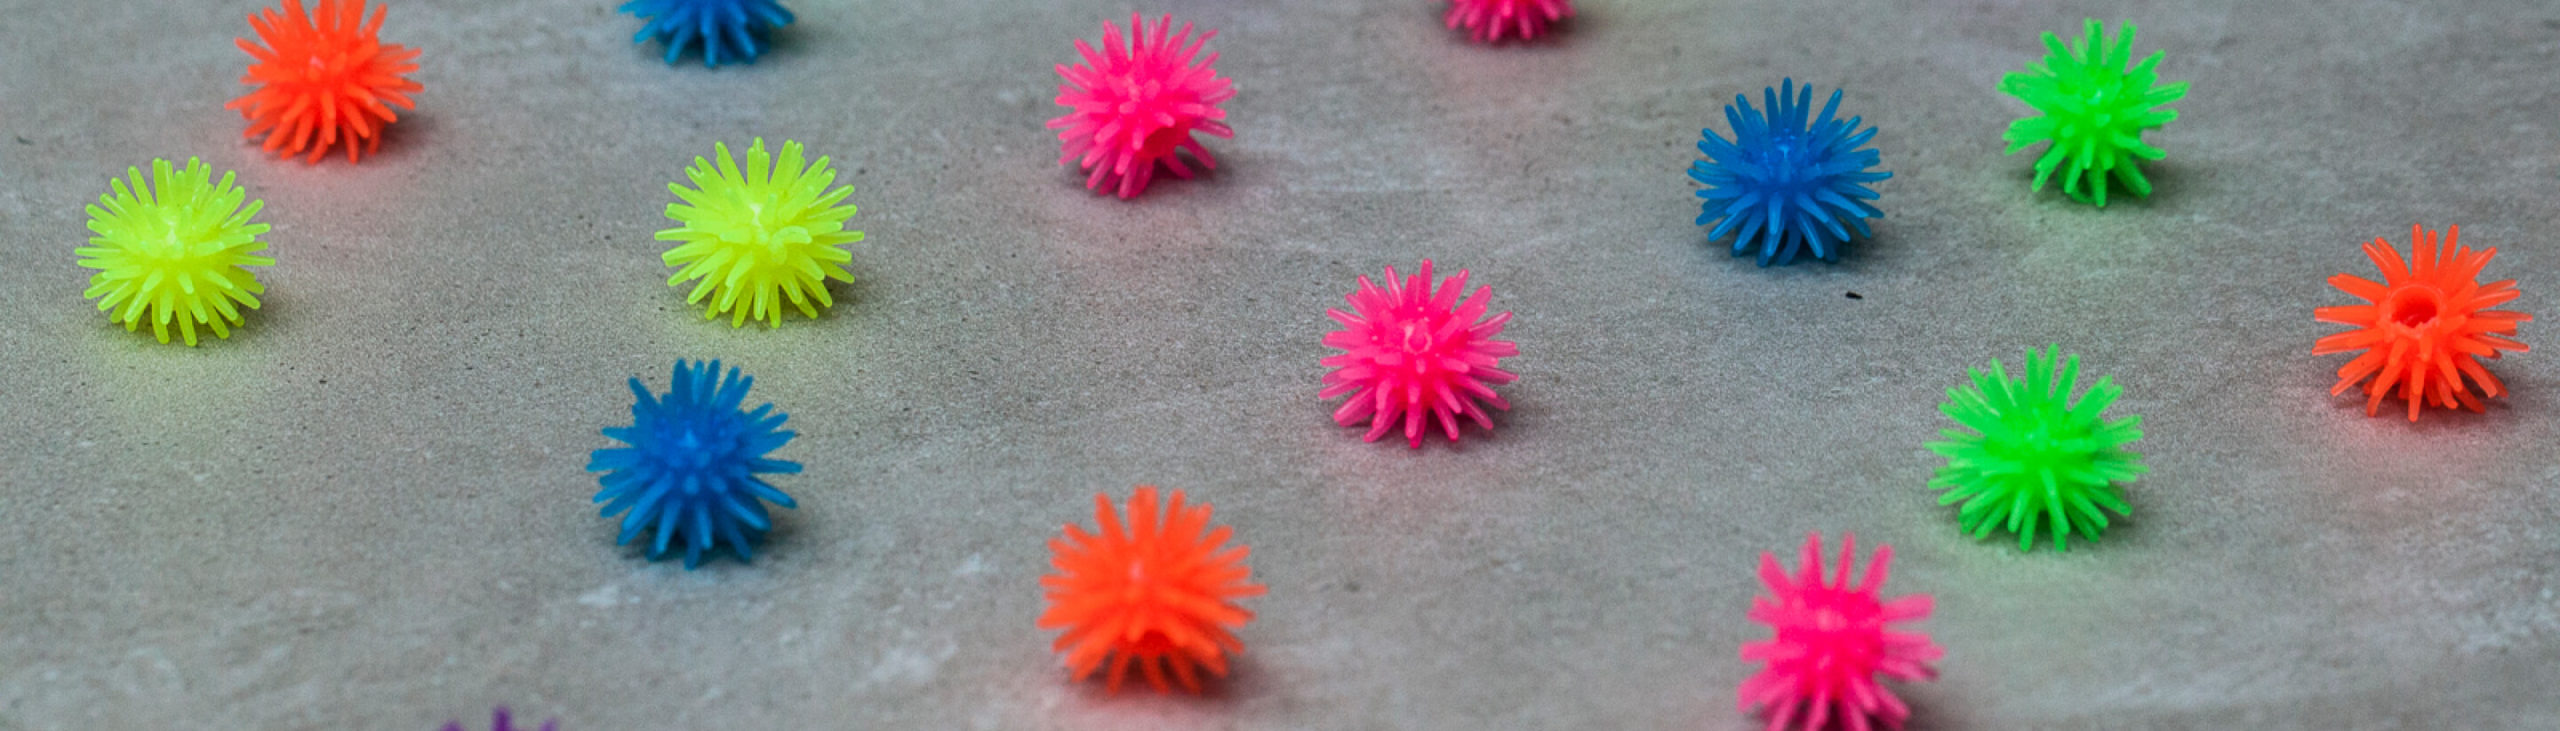 Carrelage Active Surfaces avec jouets de couleurs vives représentants des virus